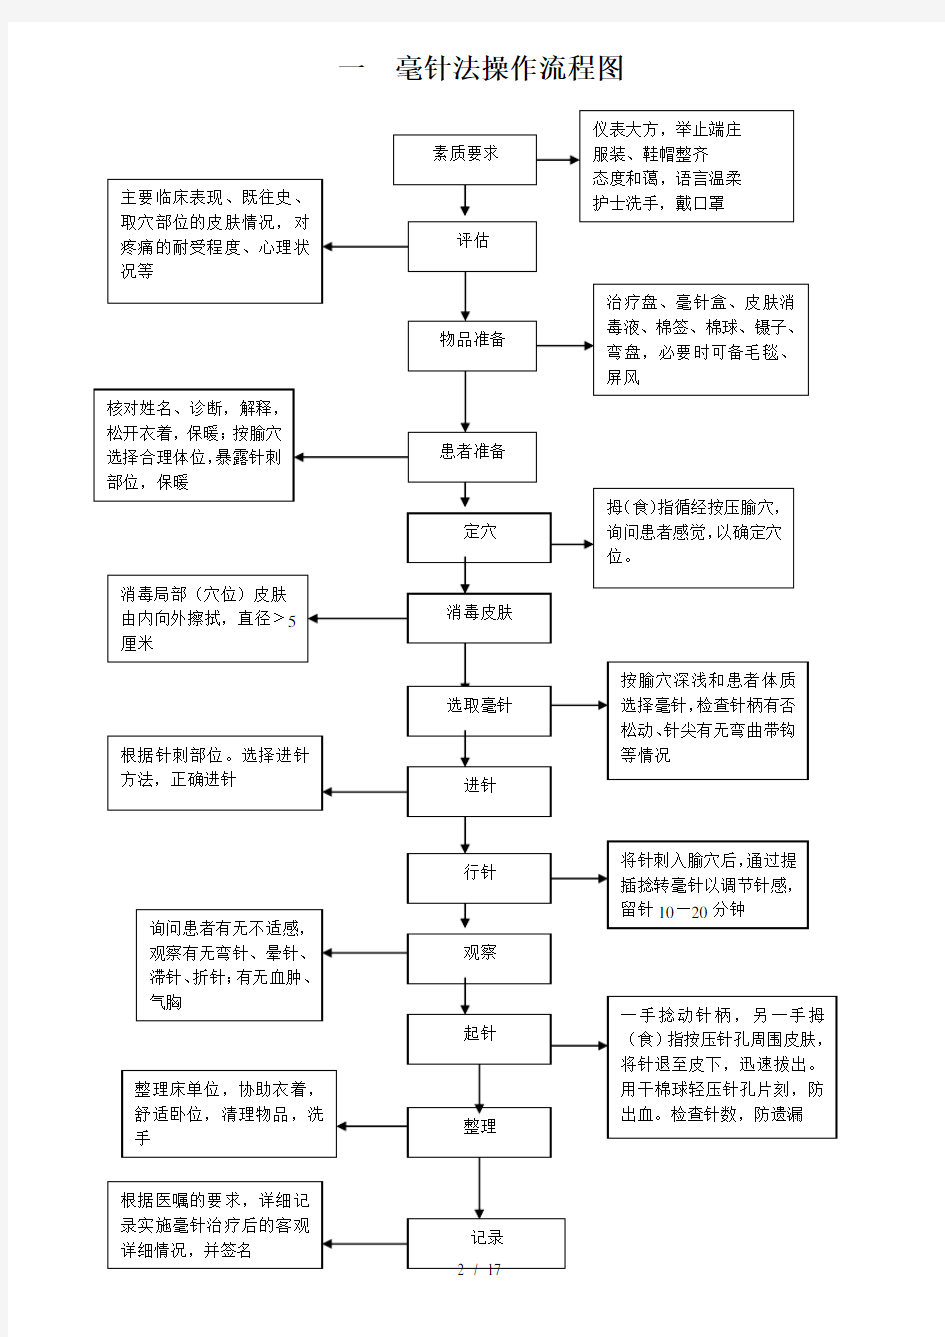 中医操作流程图(全)